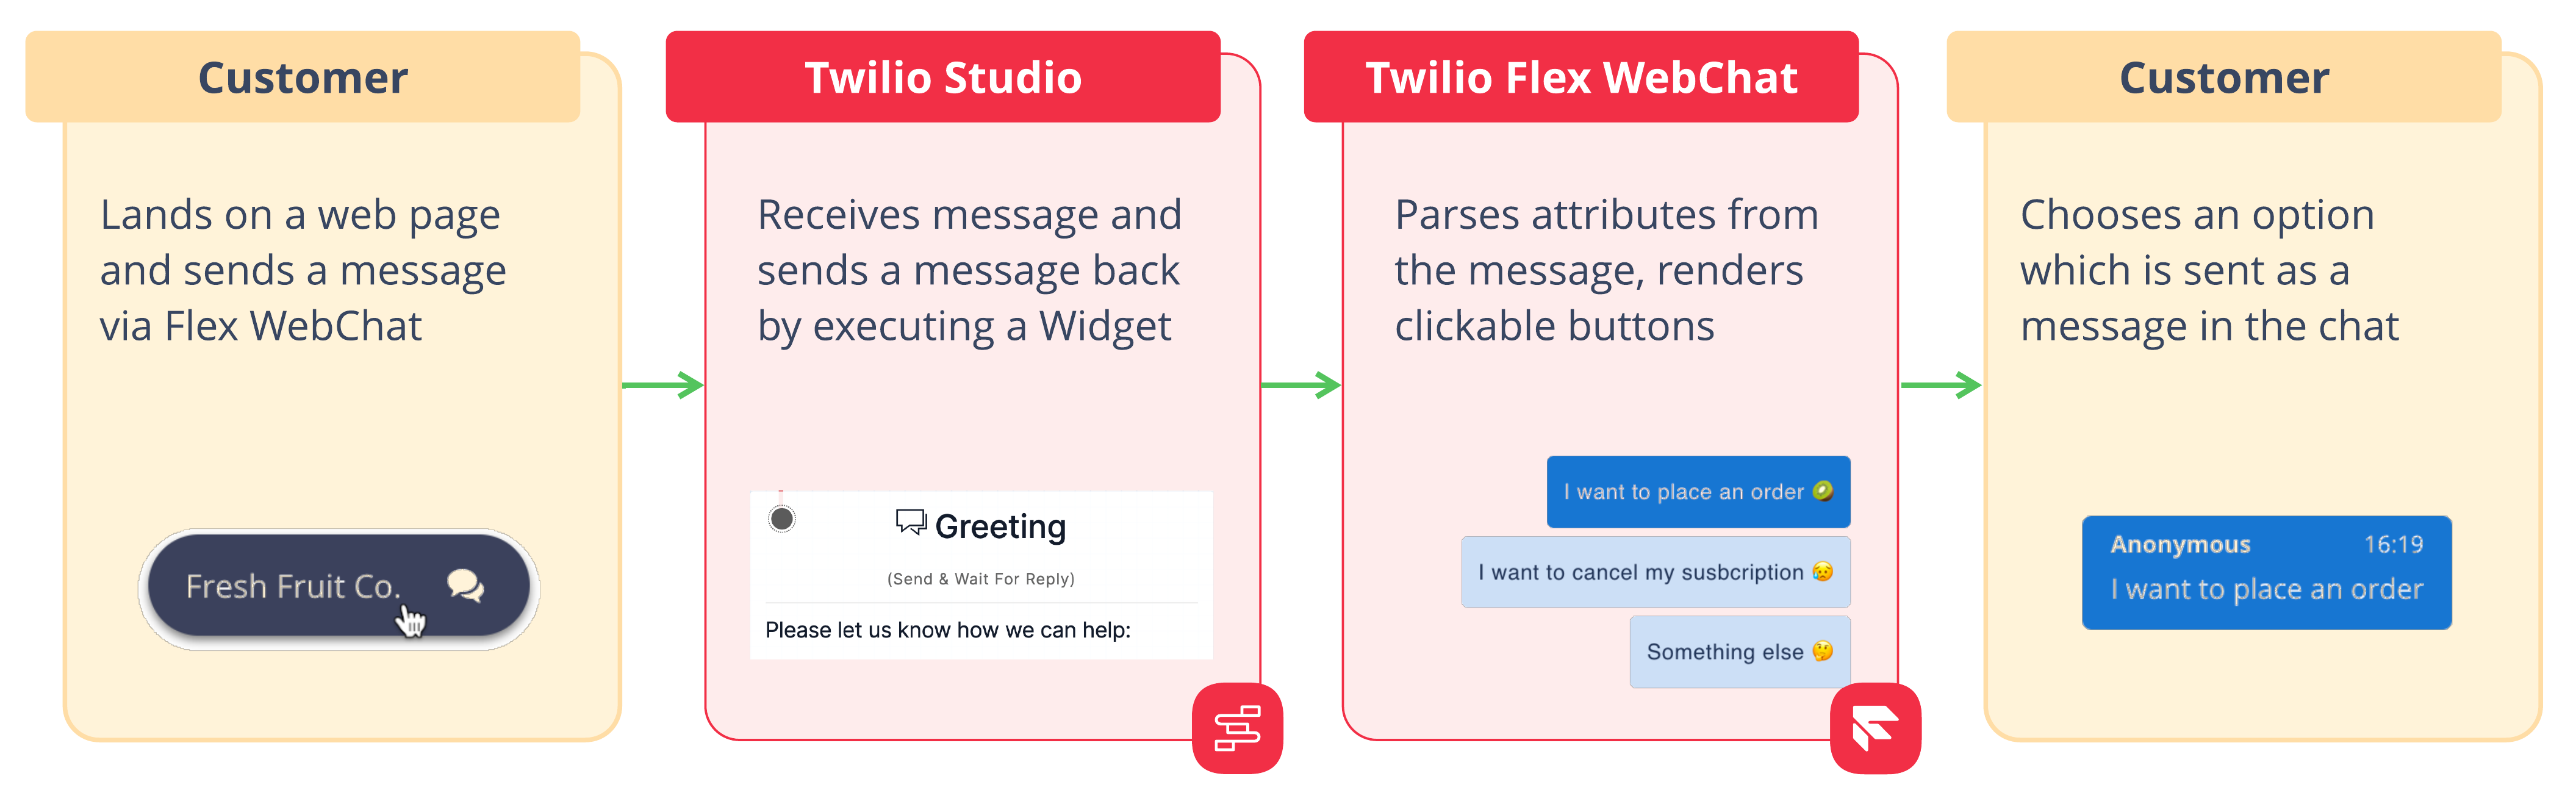 Flow of data between customer and Twilio Studio